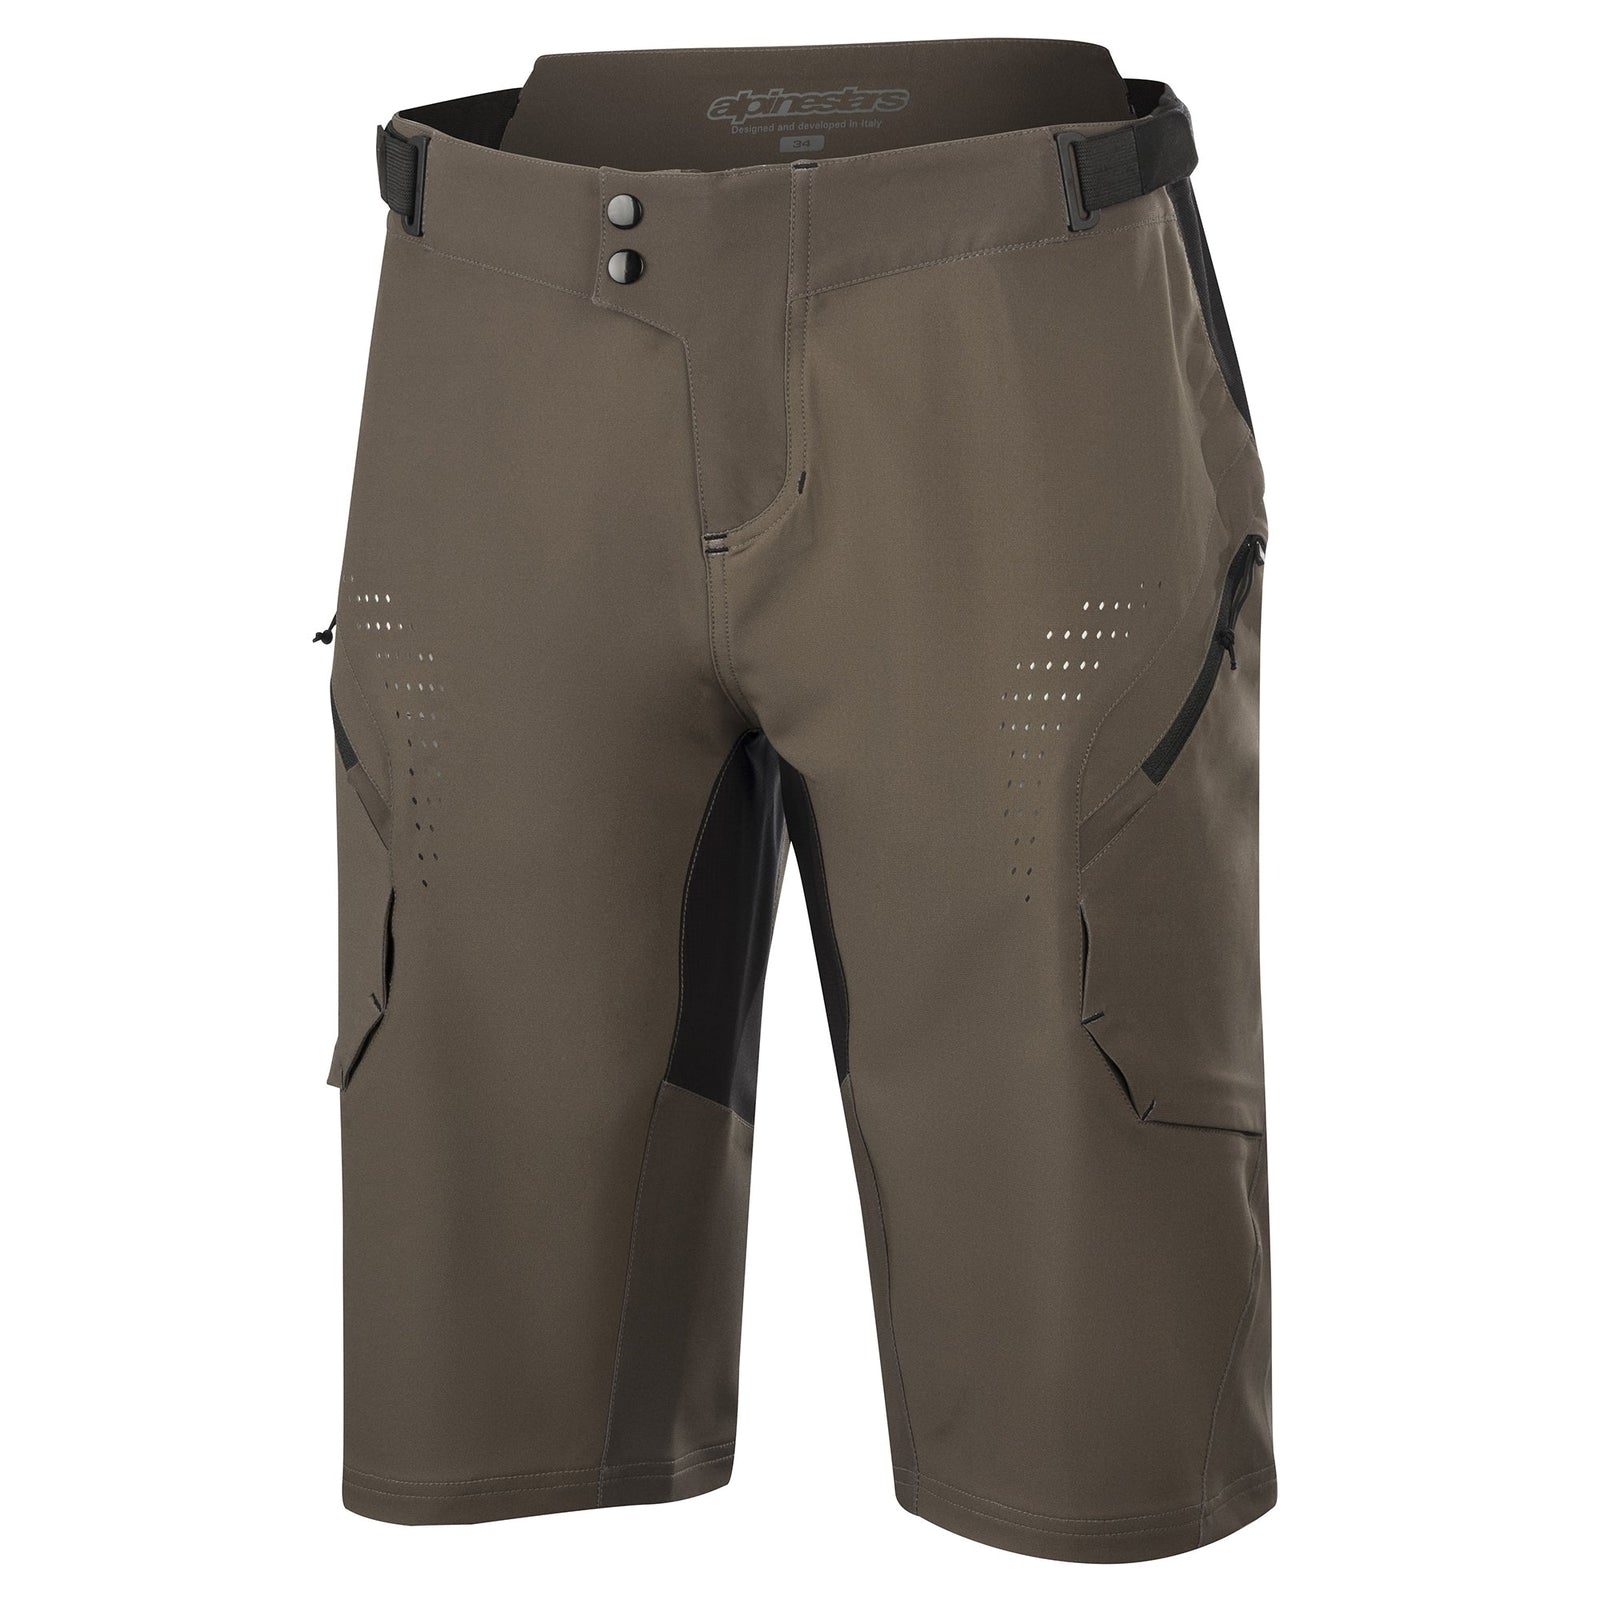 Alps 8.0 Shorts